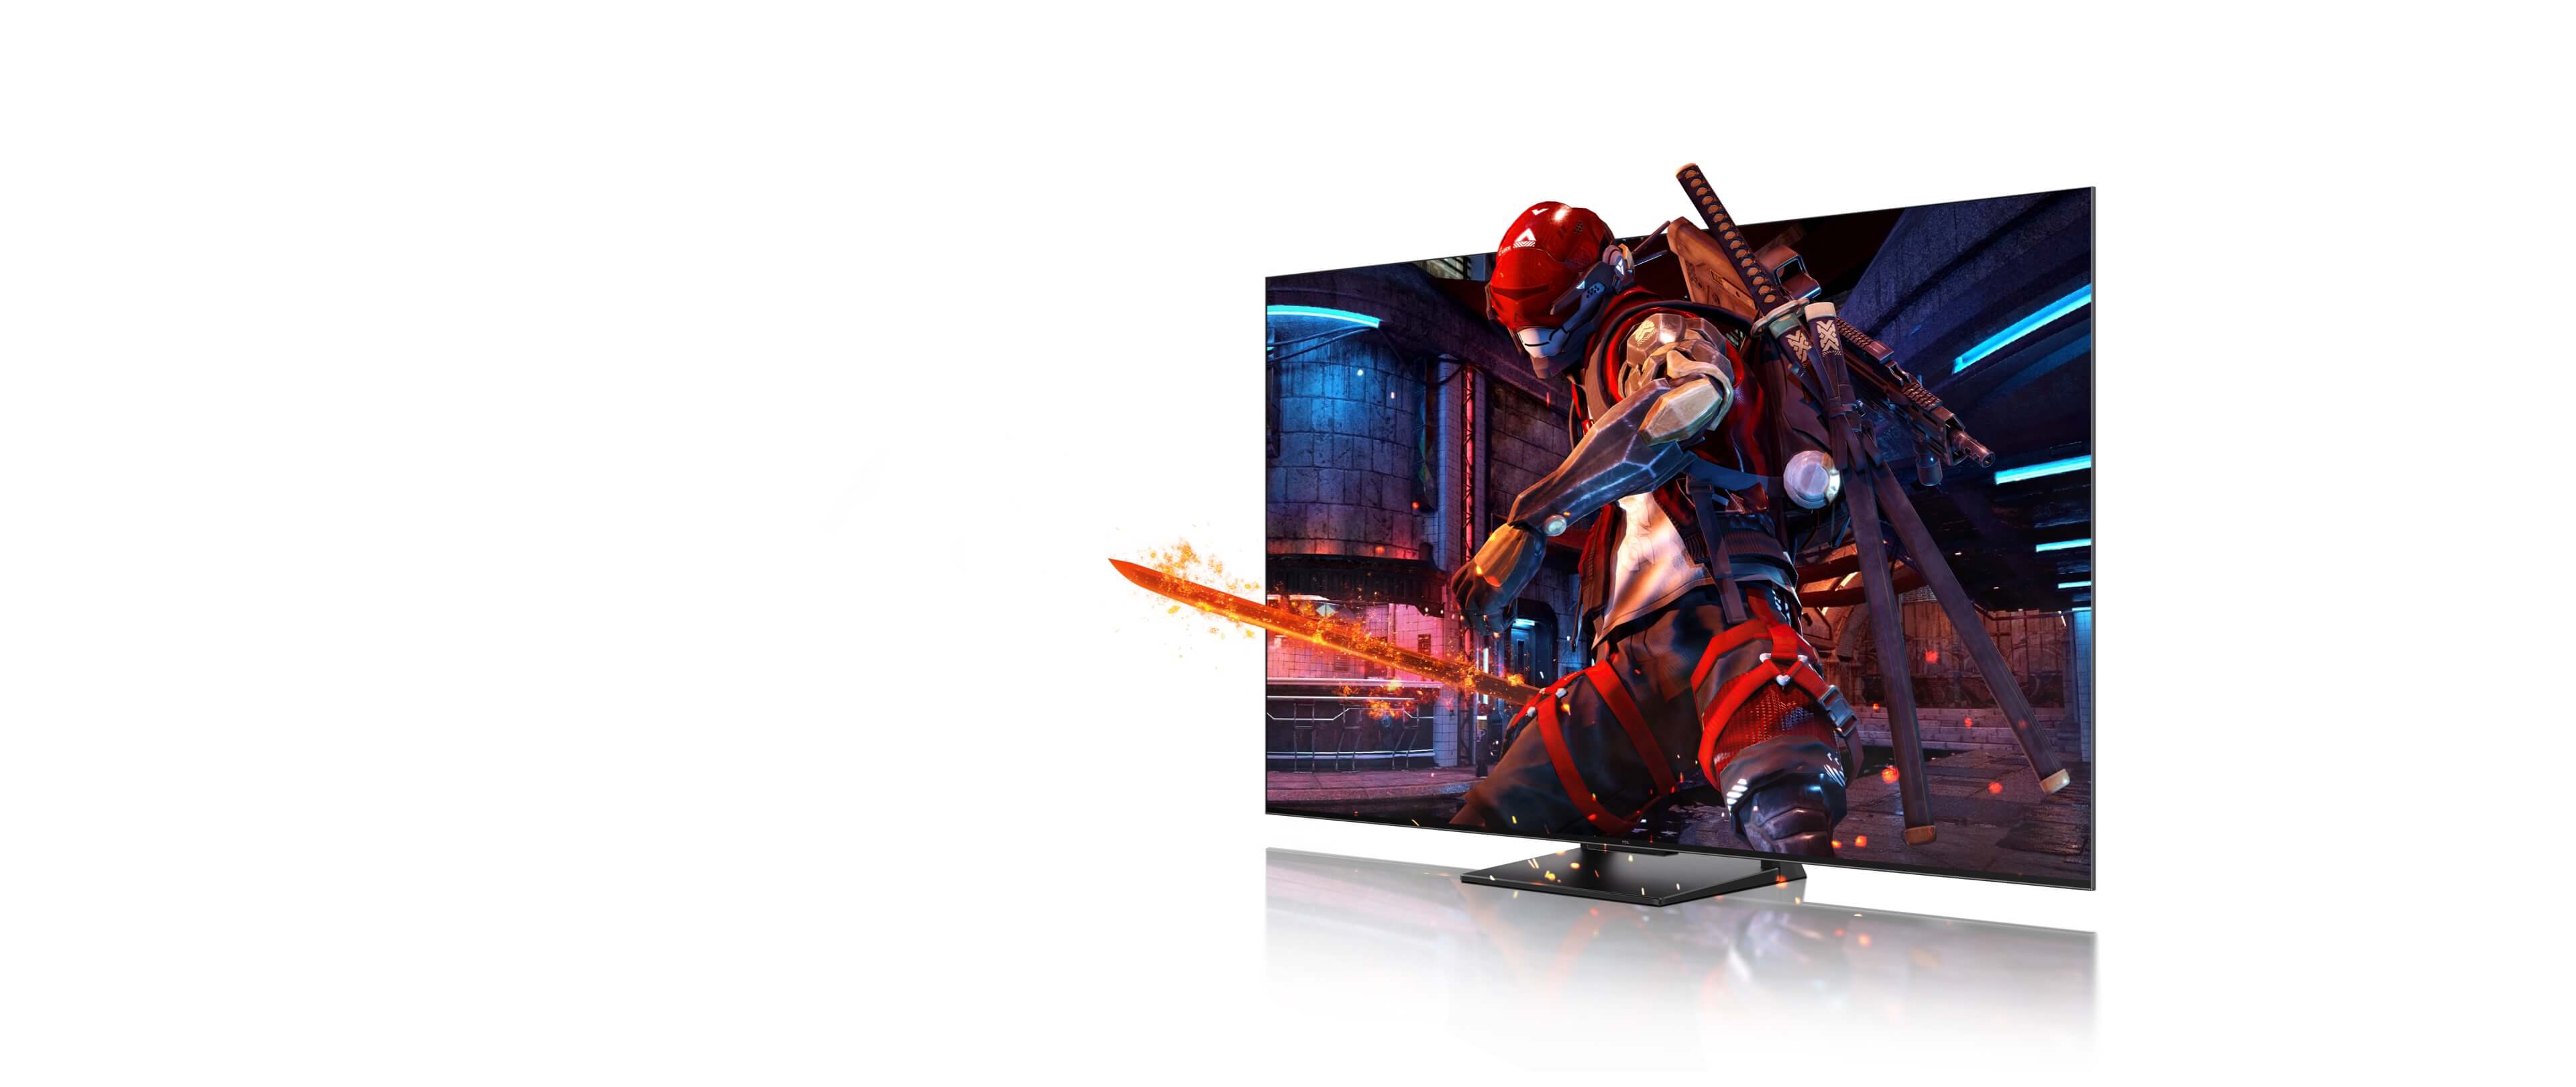 南宫ng·28 4K QLED TV<br>Game Master Pro 2.0